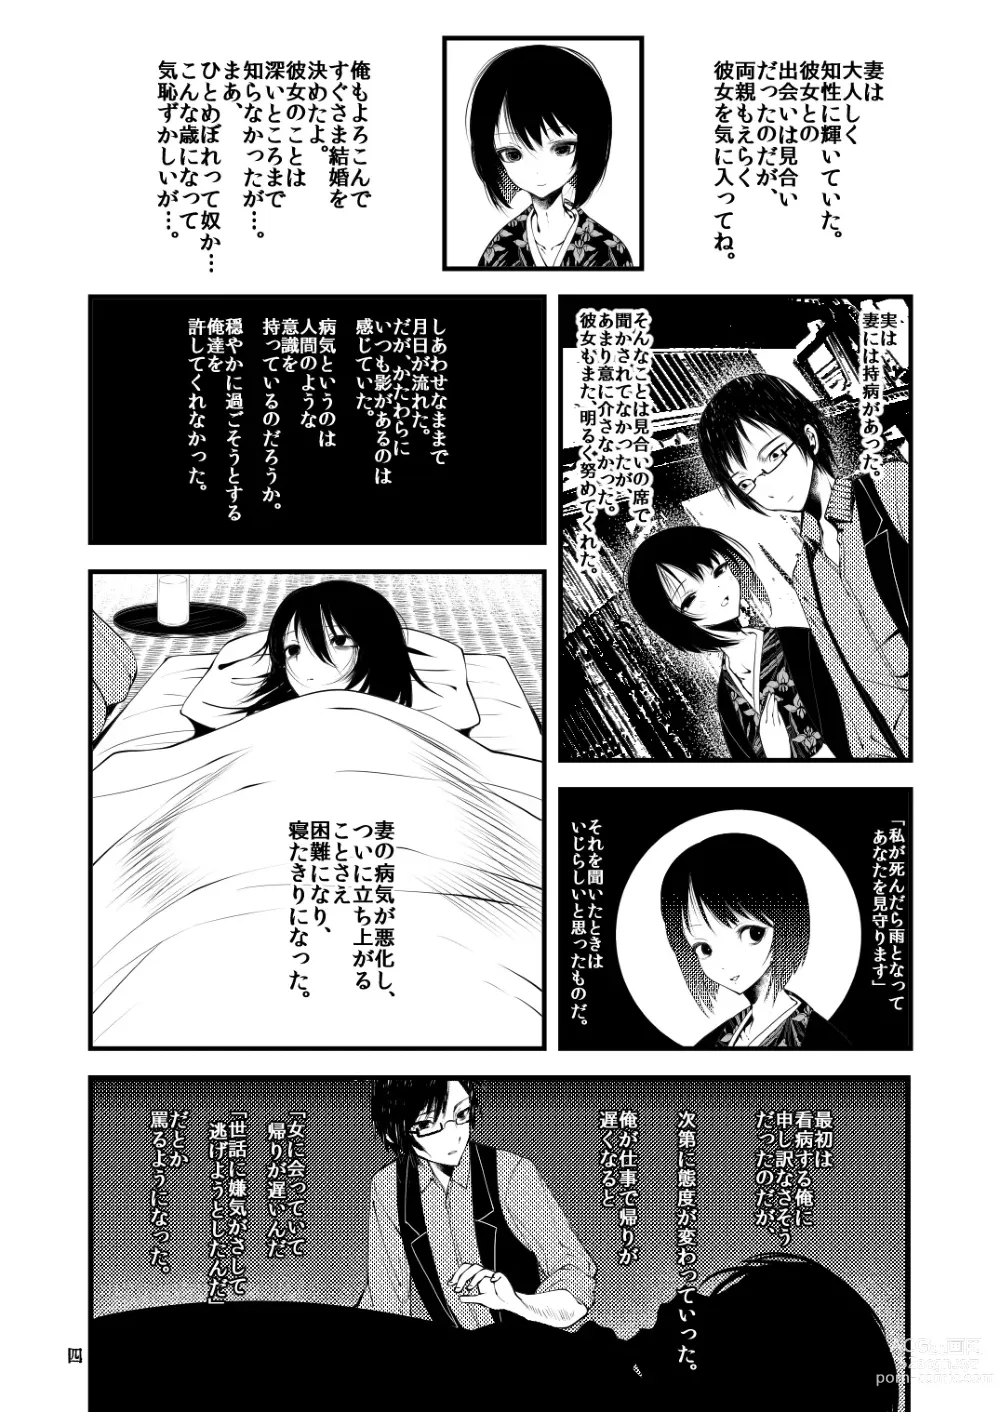 Page 3 of doujinshi Kaisoikkenchou Sougousan